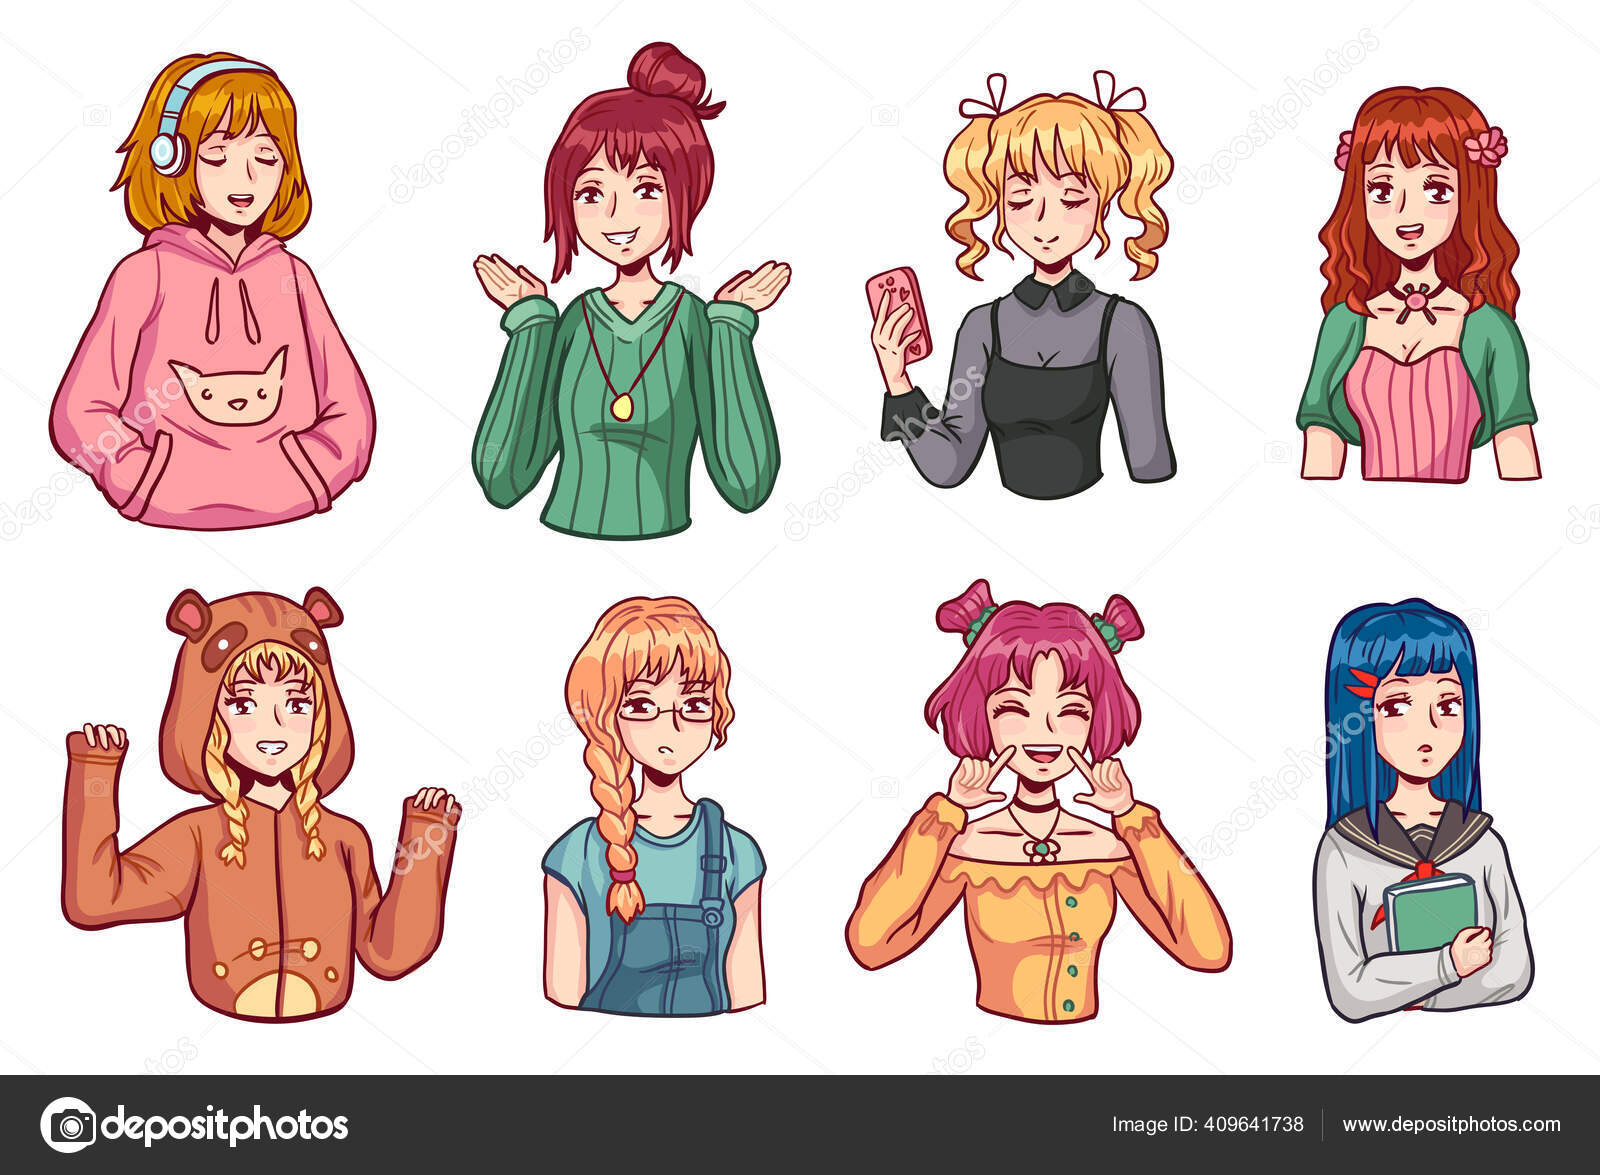 Anime mangá com uniforme escolar em várias poses